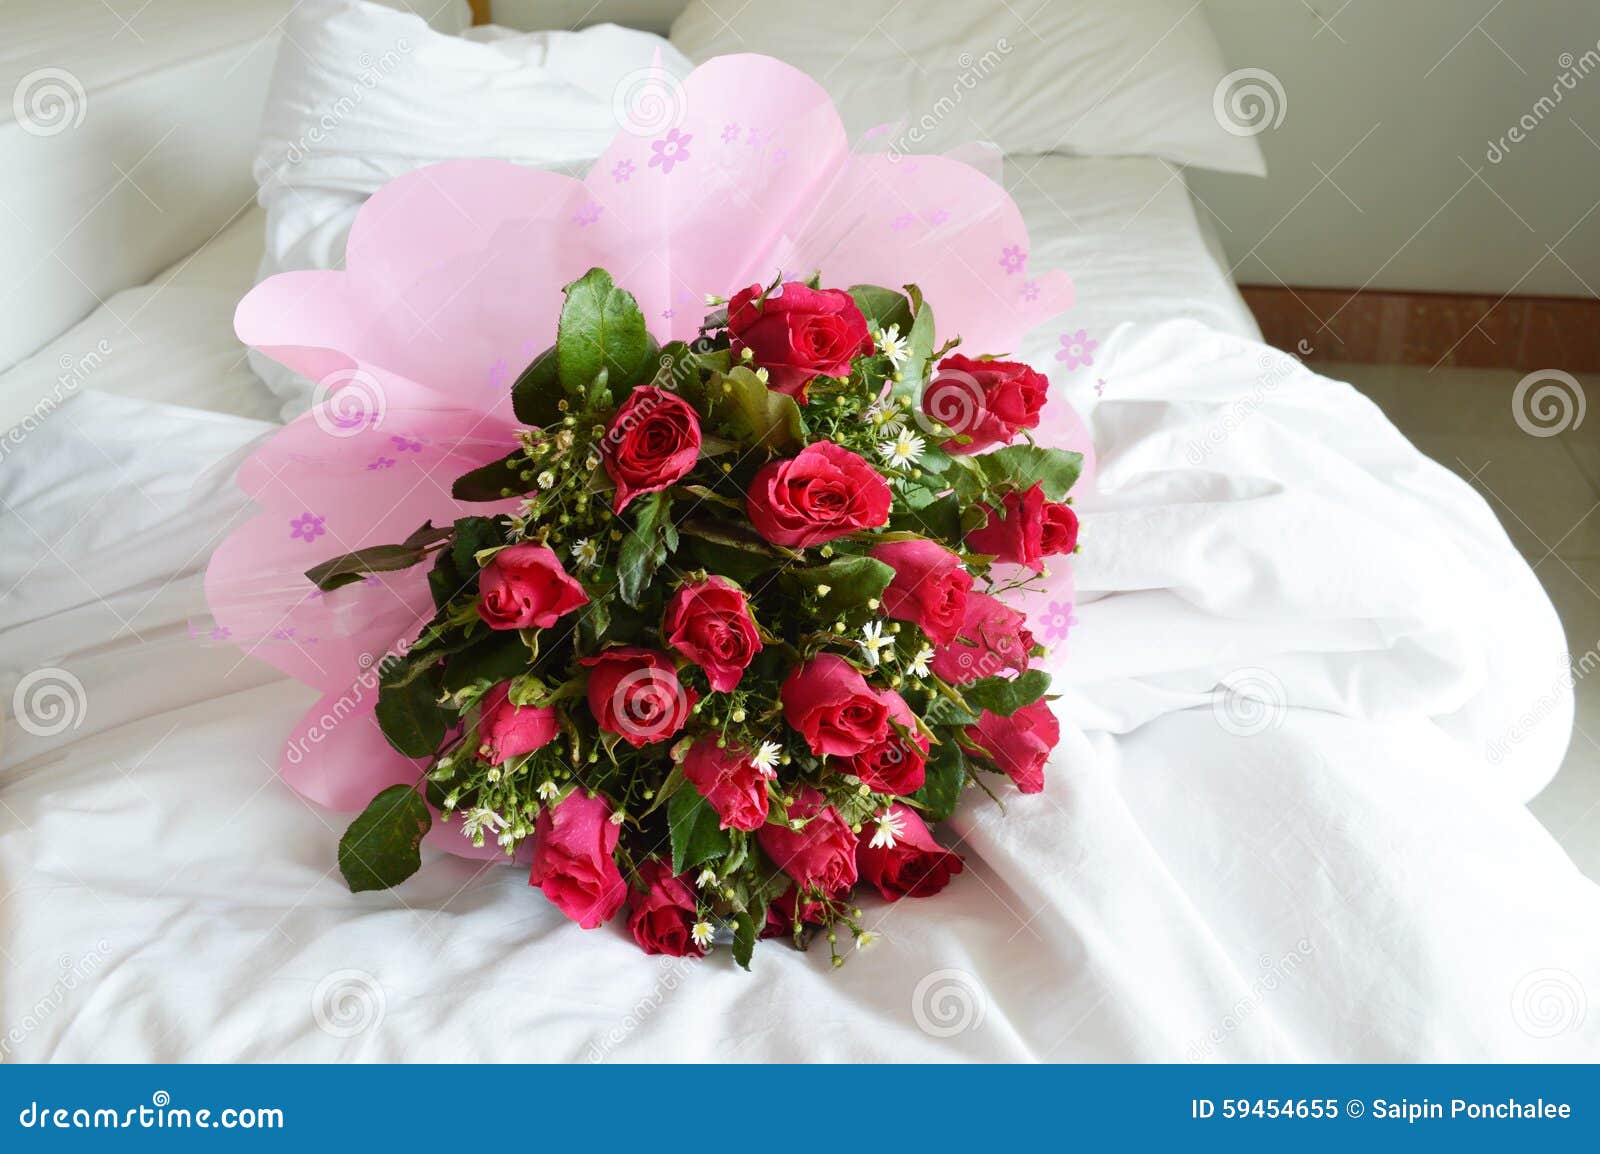 Букет Роз На Кровати Фото